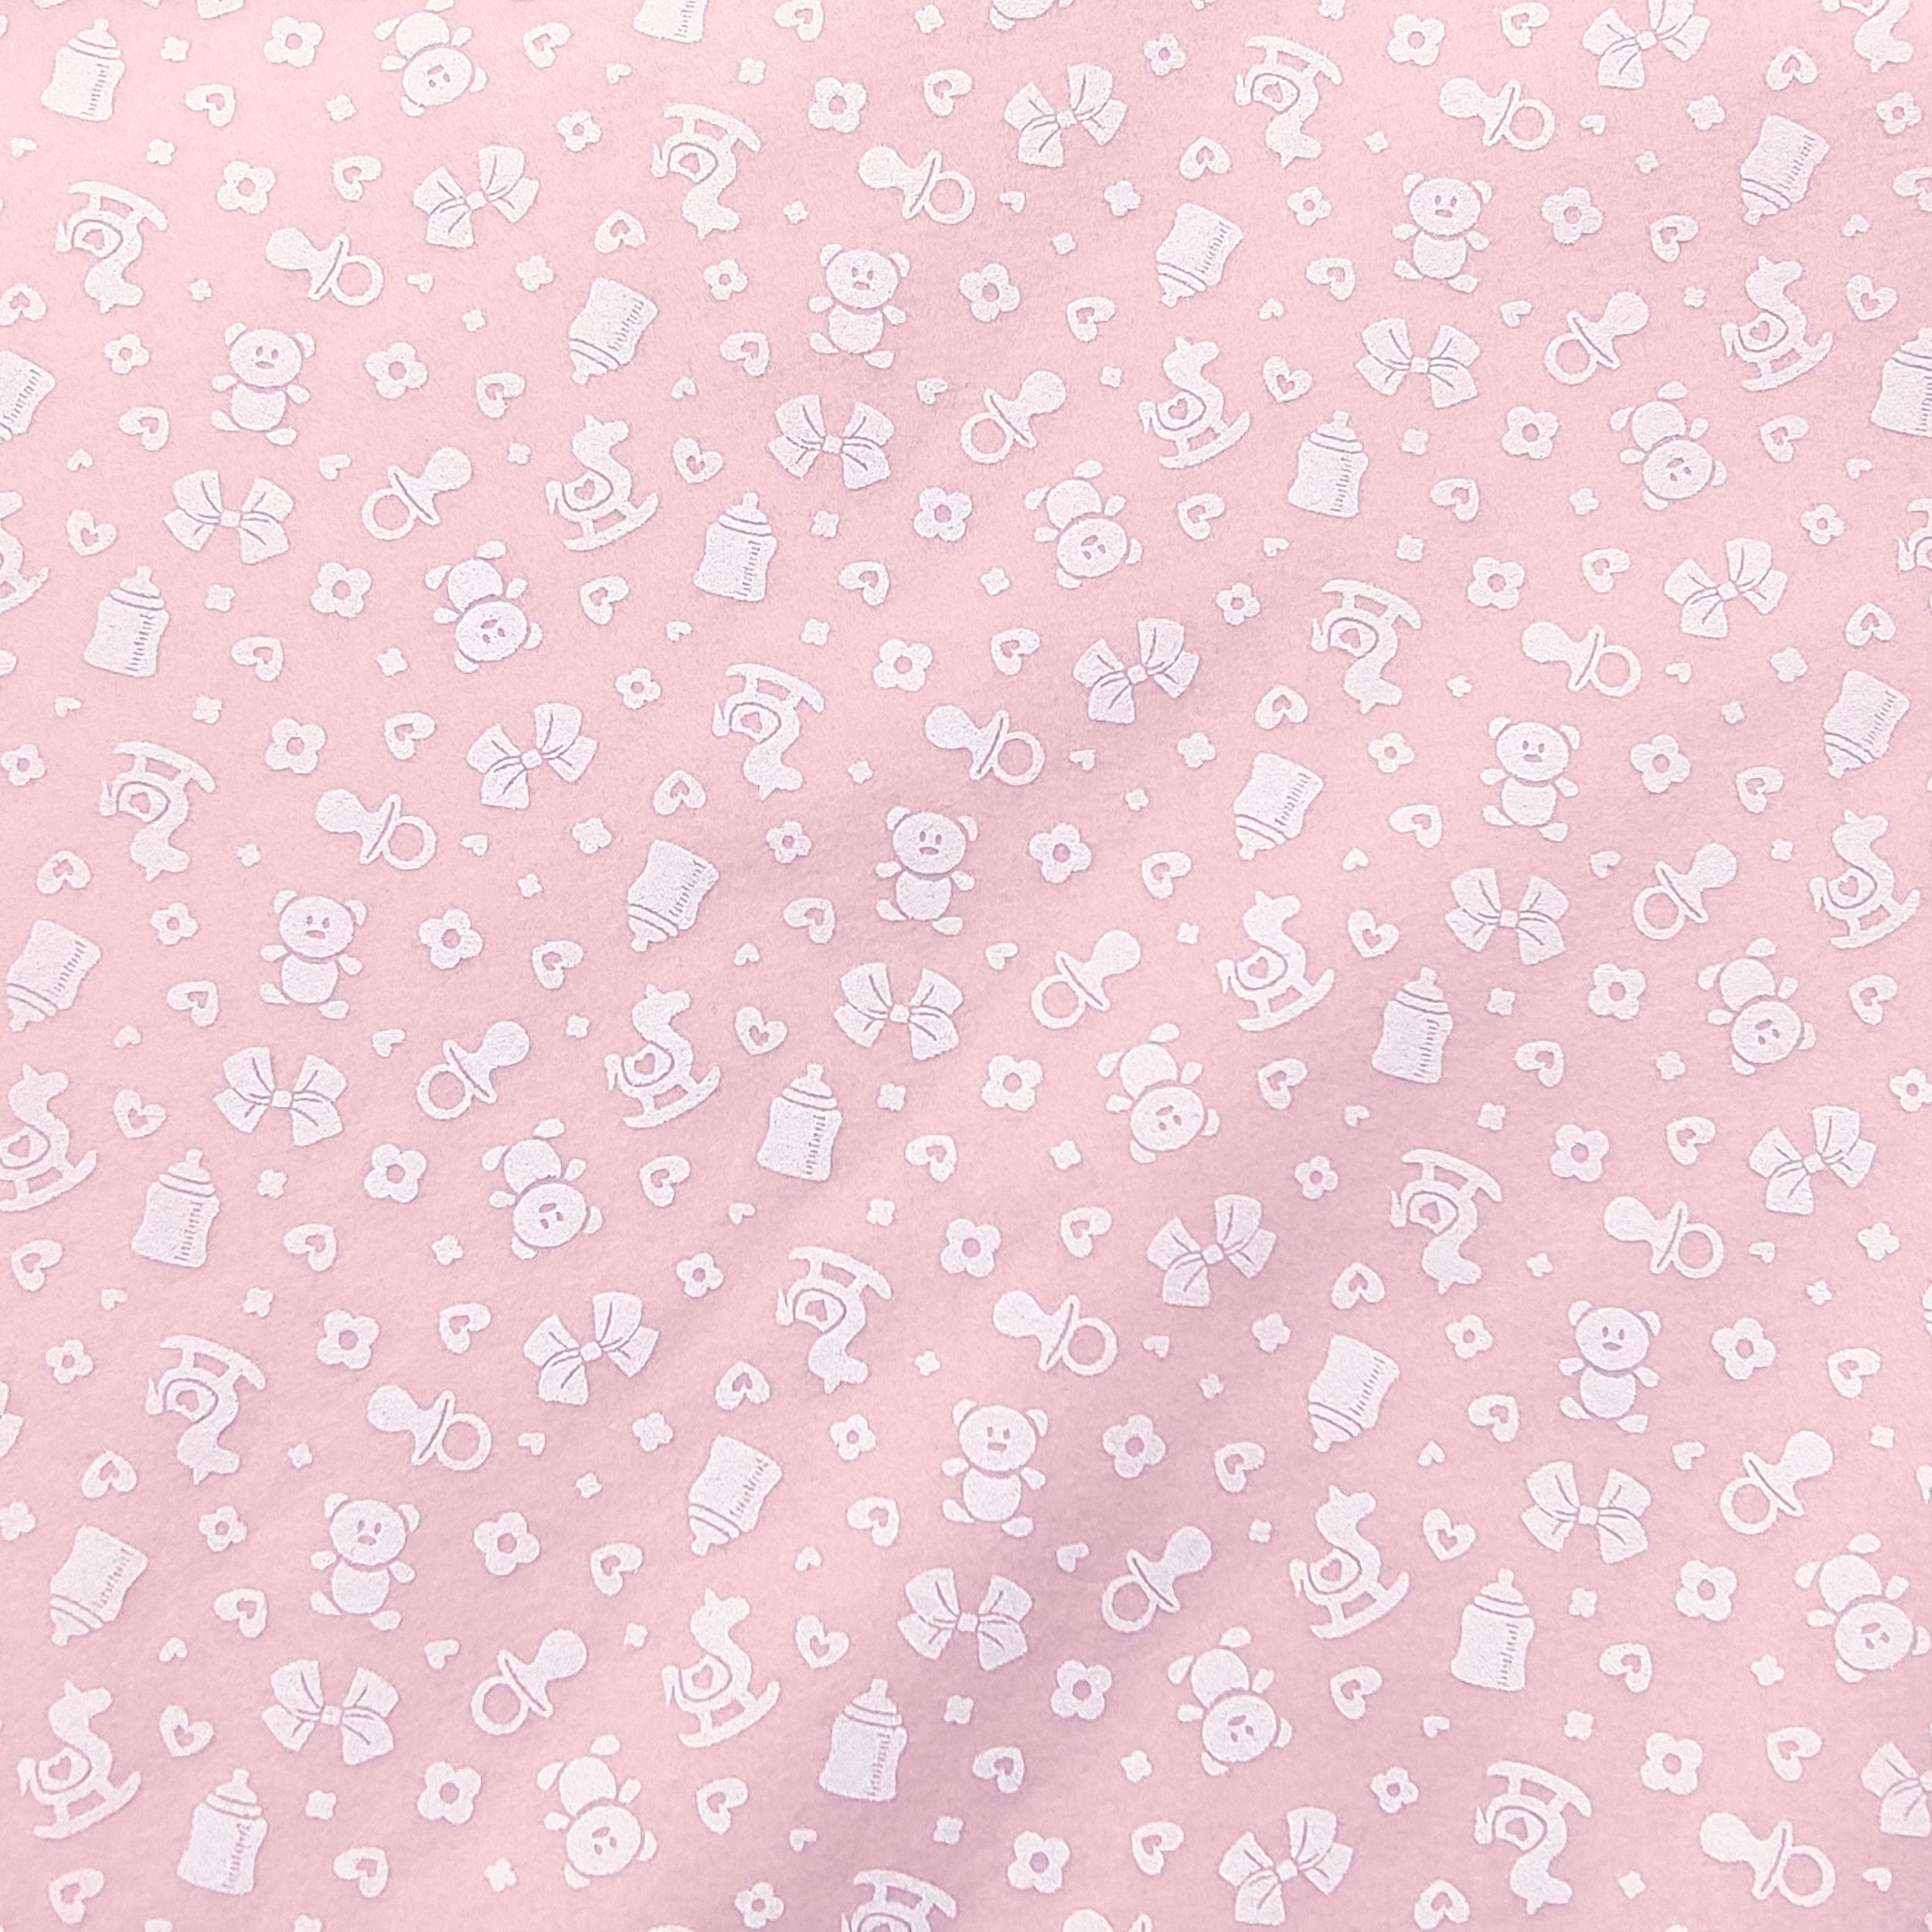 Cotone tinta unita rosa pink taglio copertina 75×100 (pre-tagliato